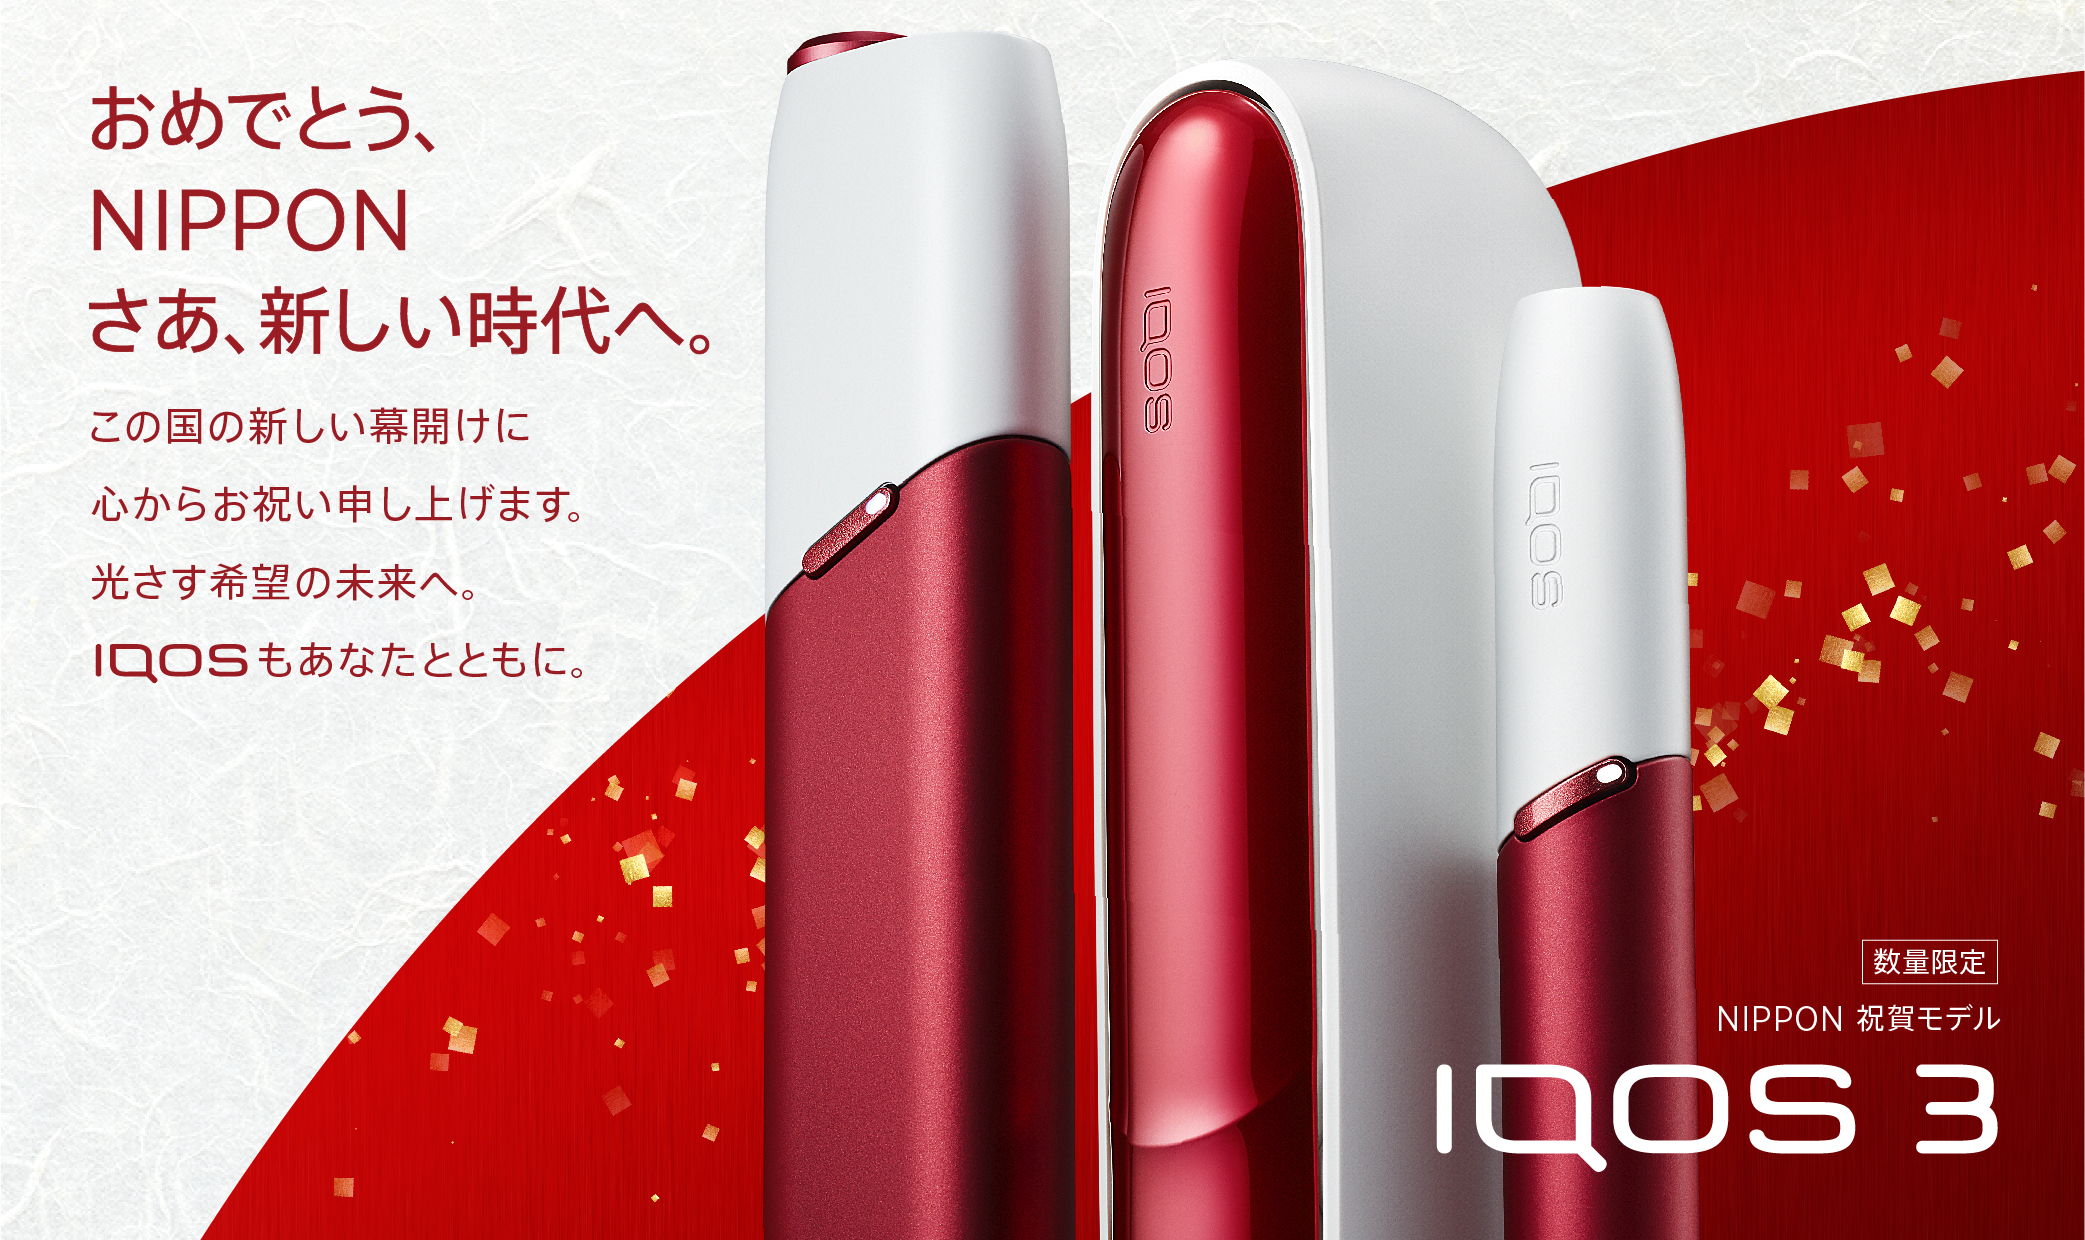 IQOS日本限定販売モデルを発売「IQOS 3 NIPPON 祝賀モデル」「IQOS 3 